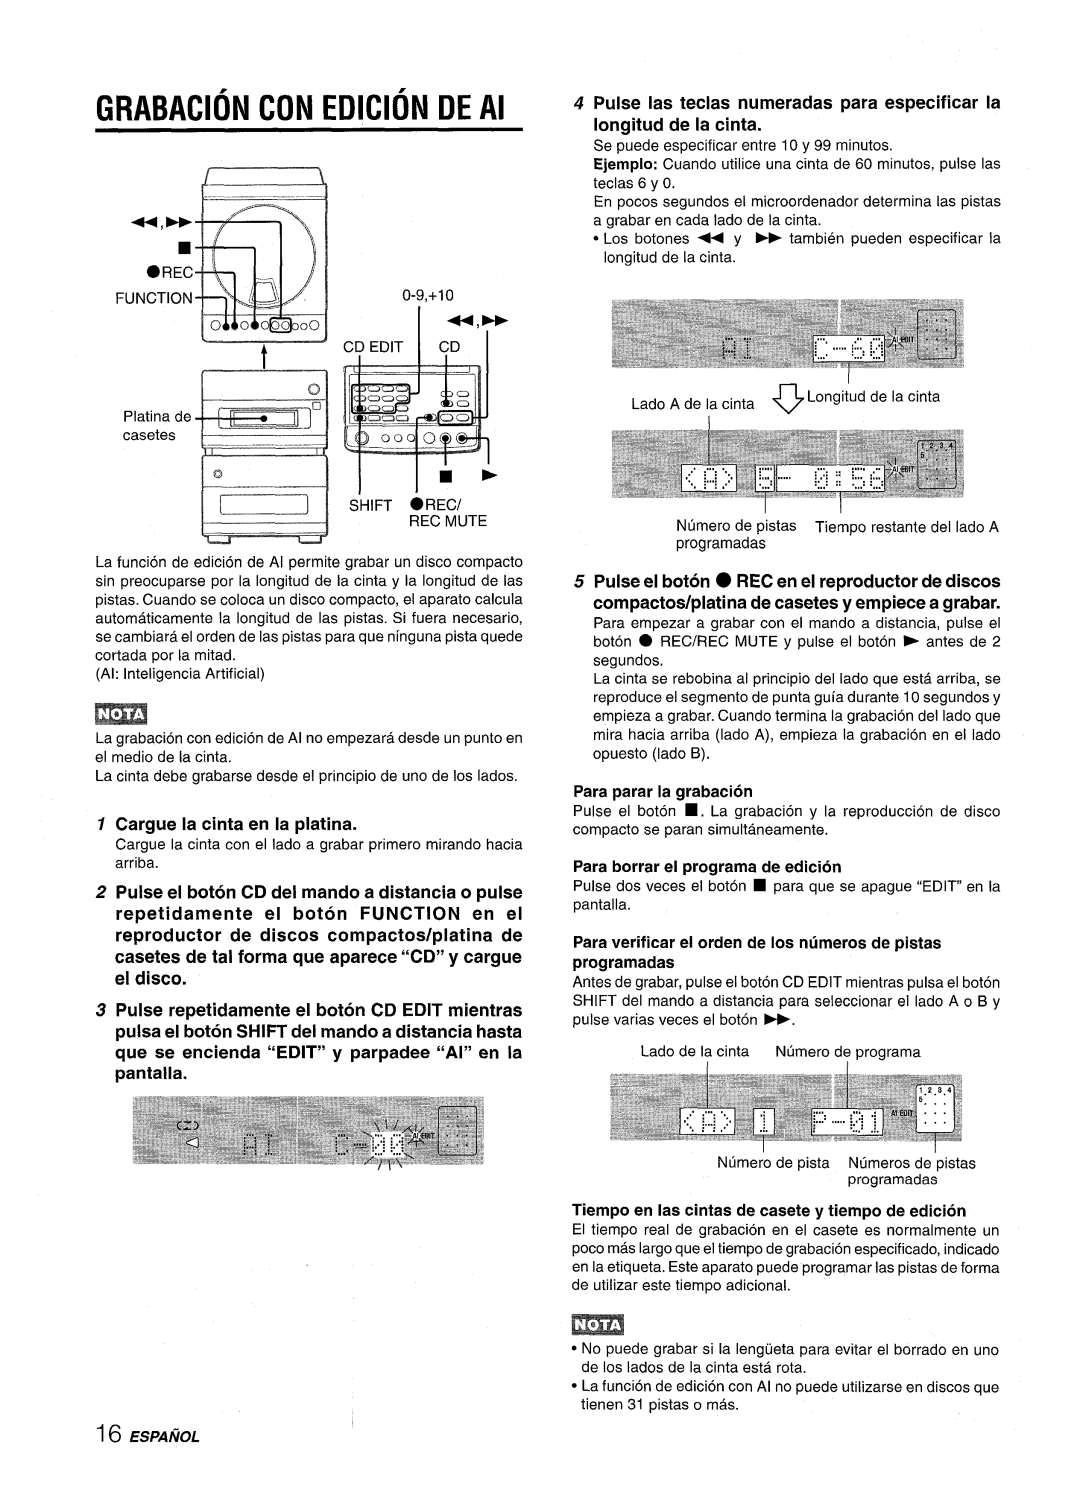 Aiwa XR-M88 manual GRABACION CON EDICION DE Al, Pulse Ias teclas numeradas para especificar la Iongitud de la cinta 